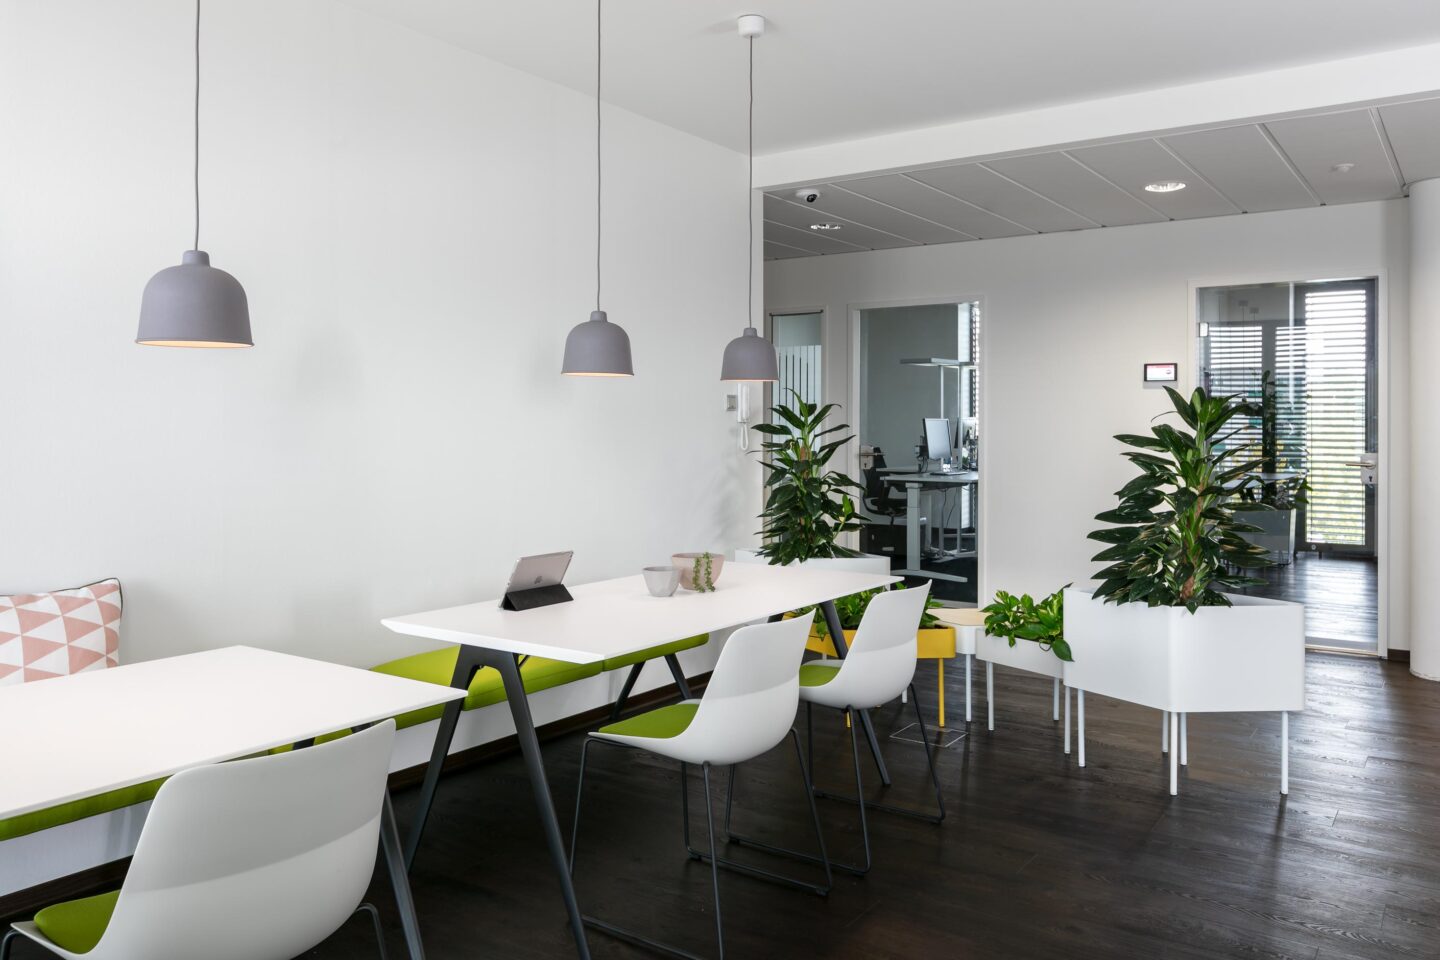 Inovex GmbH │ IT-Unternehmen │ moderne Büroräume │ offene und kommunikative Unternehmenskultur